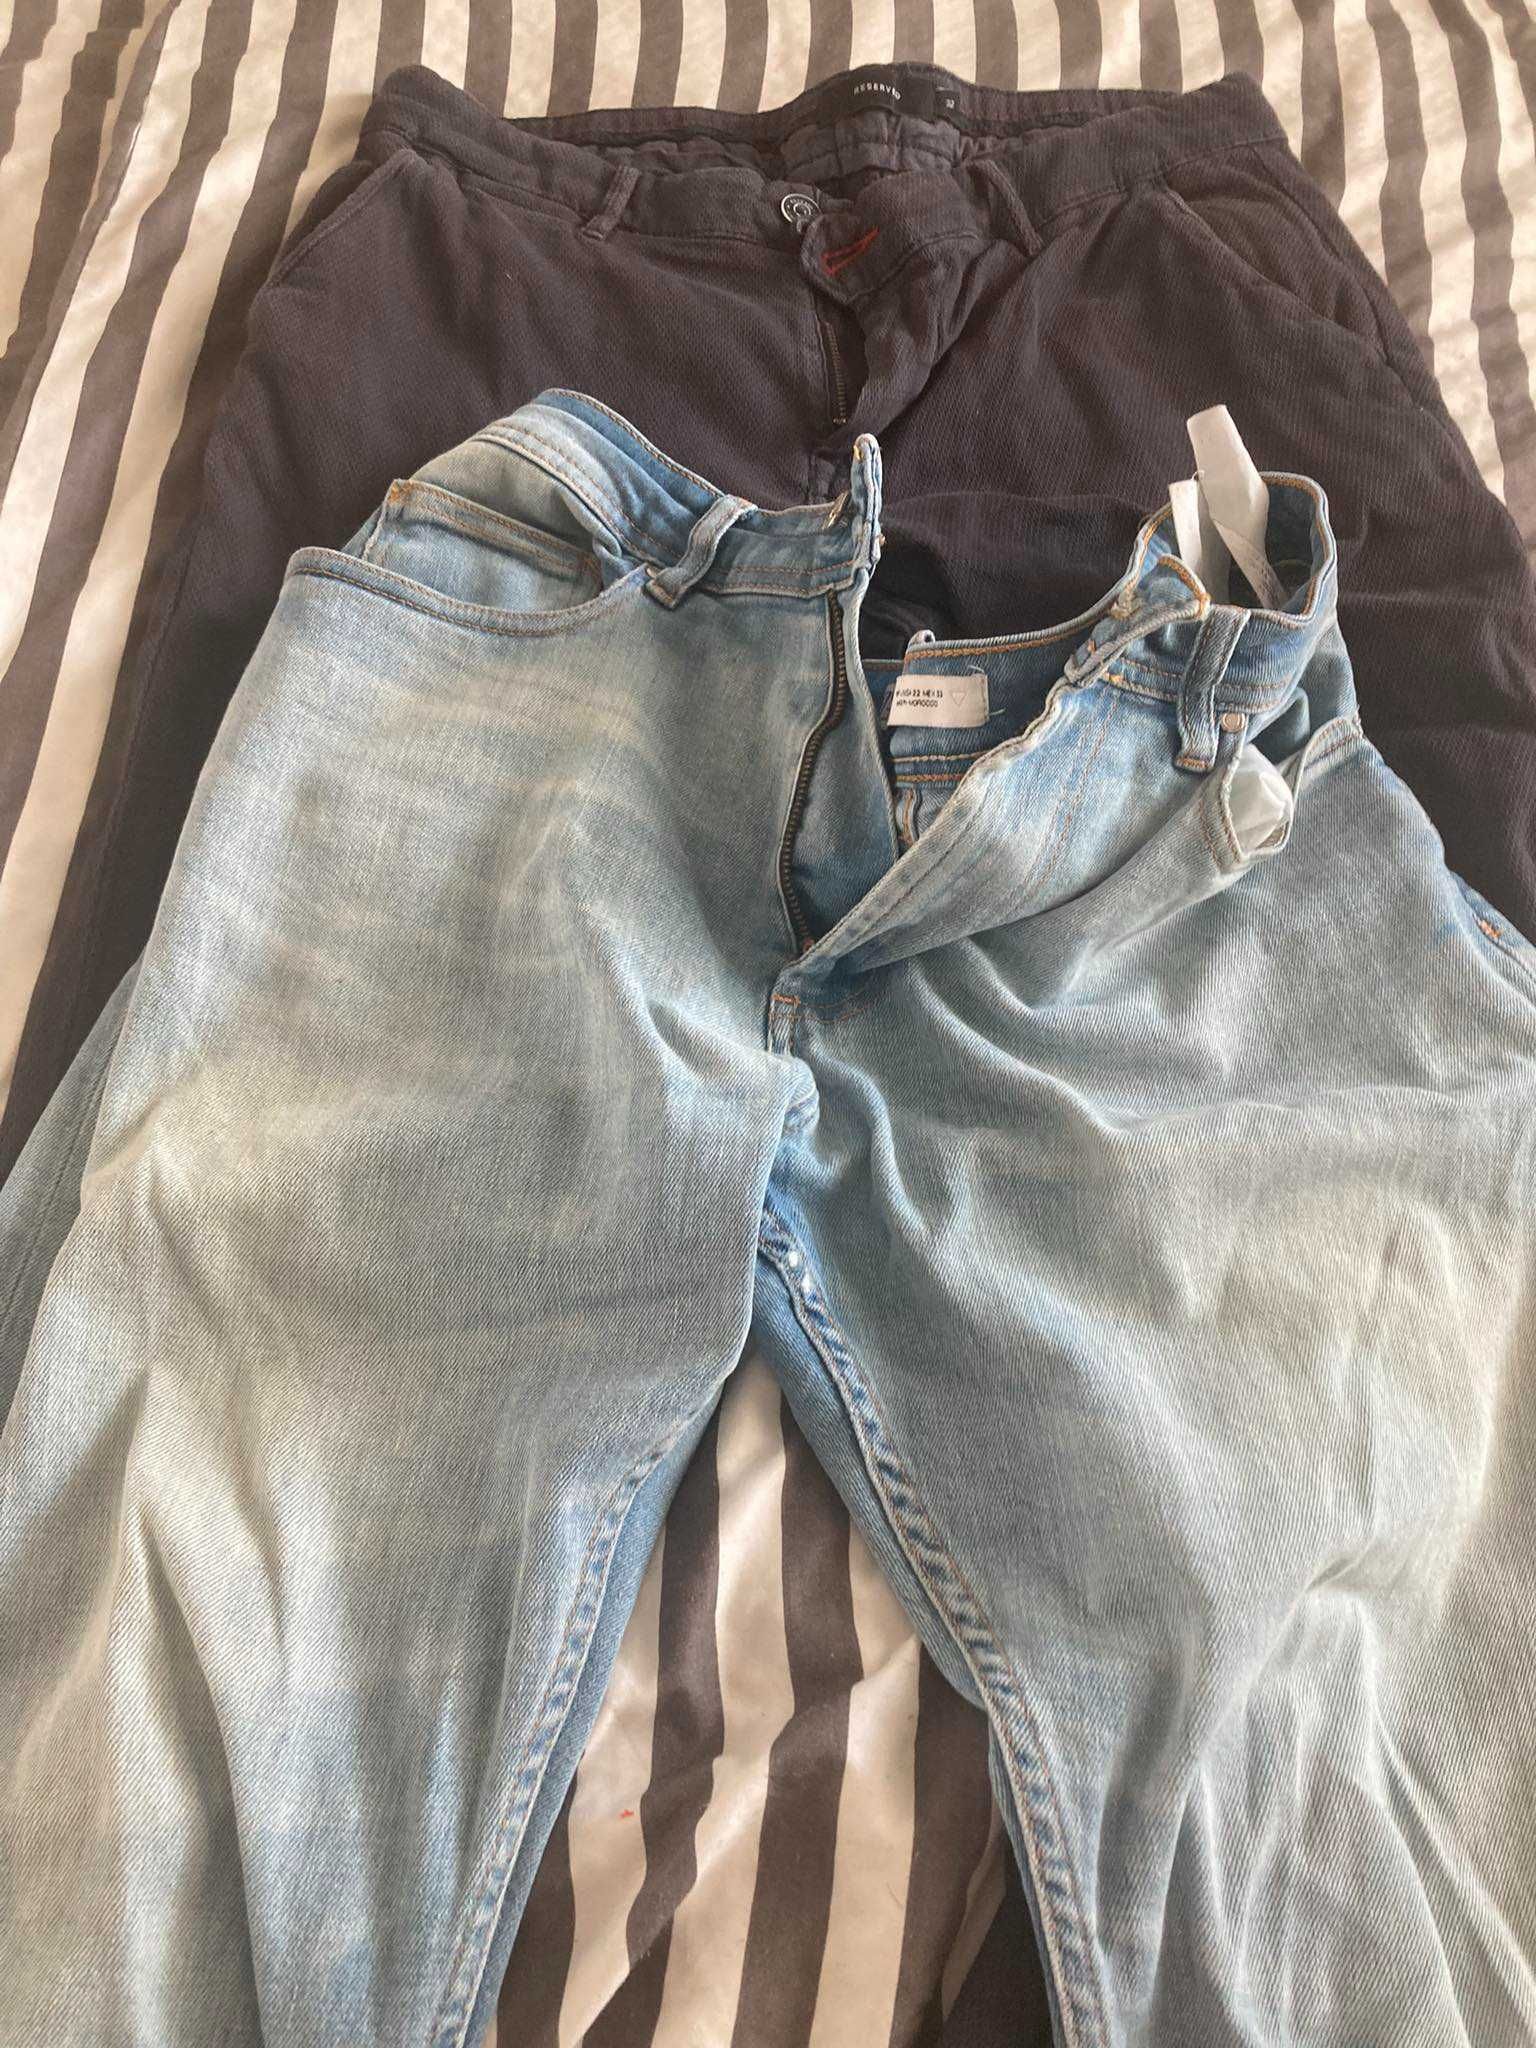 3 чифта мъжки панталони - Zara, Reserved, Pull&Bear